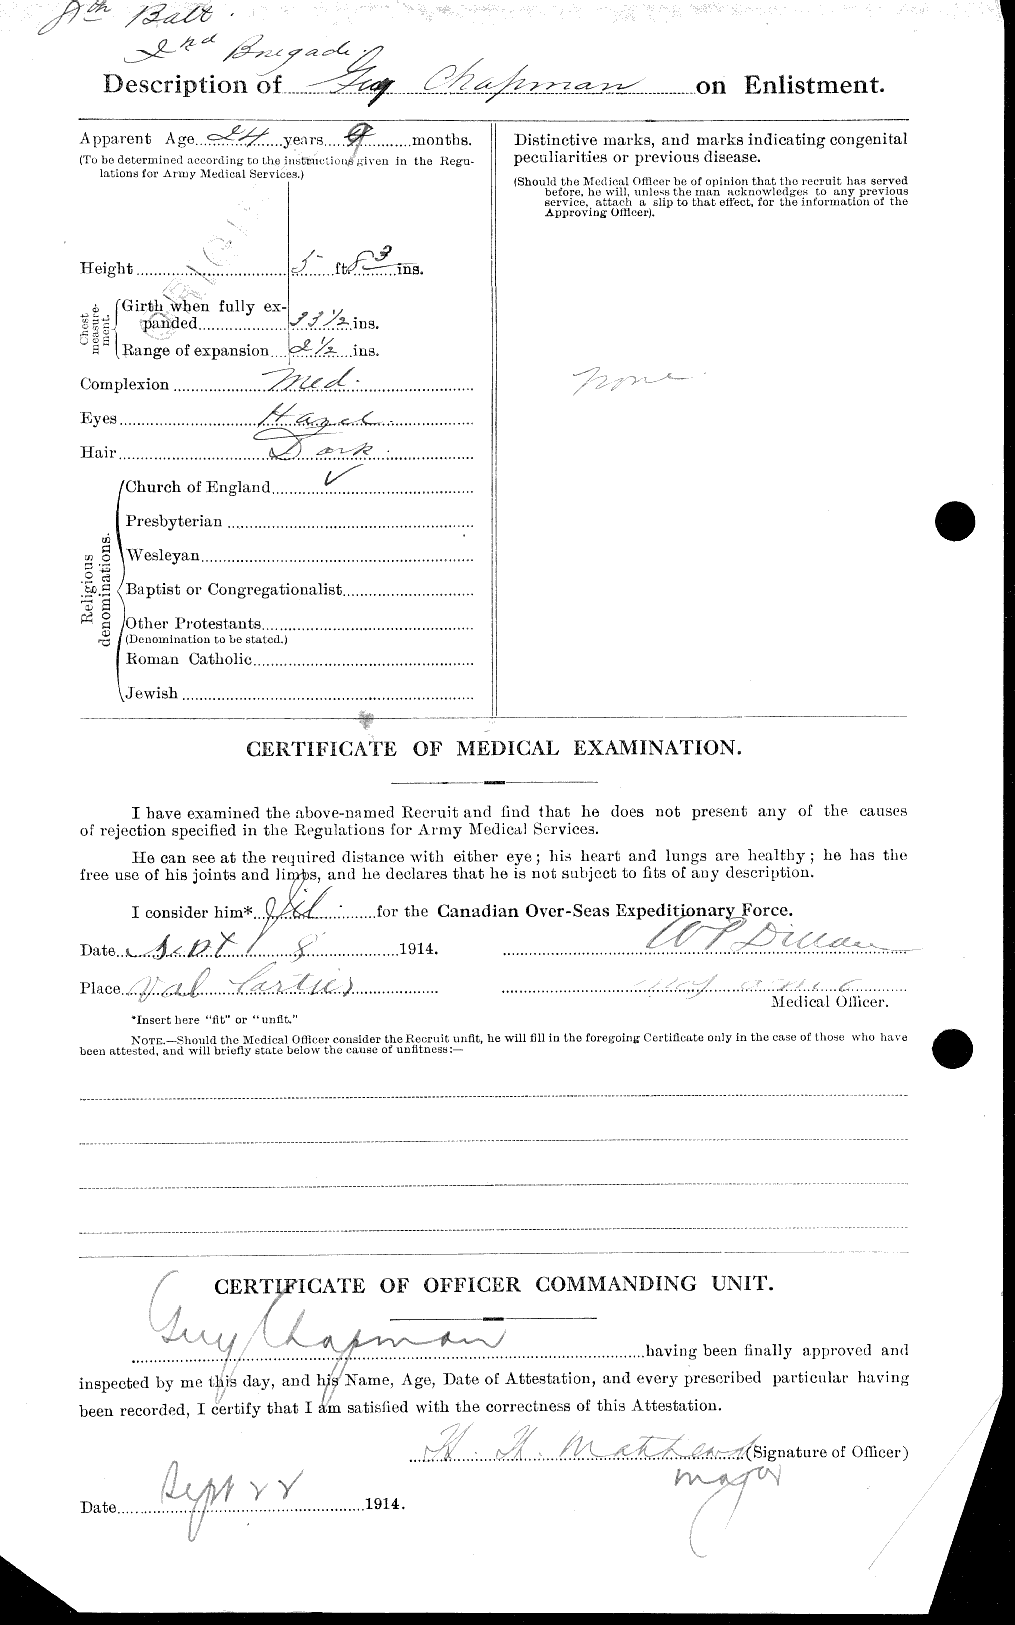 Dossiers du Personnel de la Première Guerre mondiale - CEC 014669b